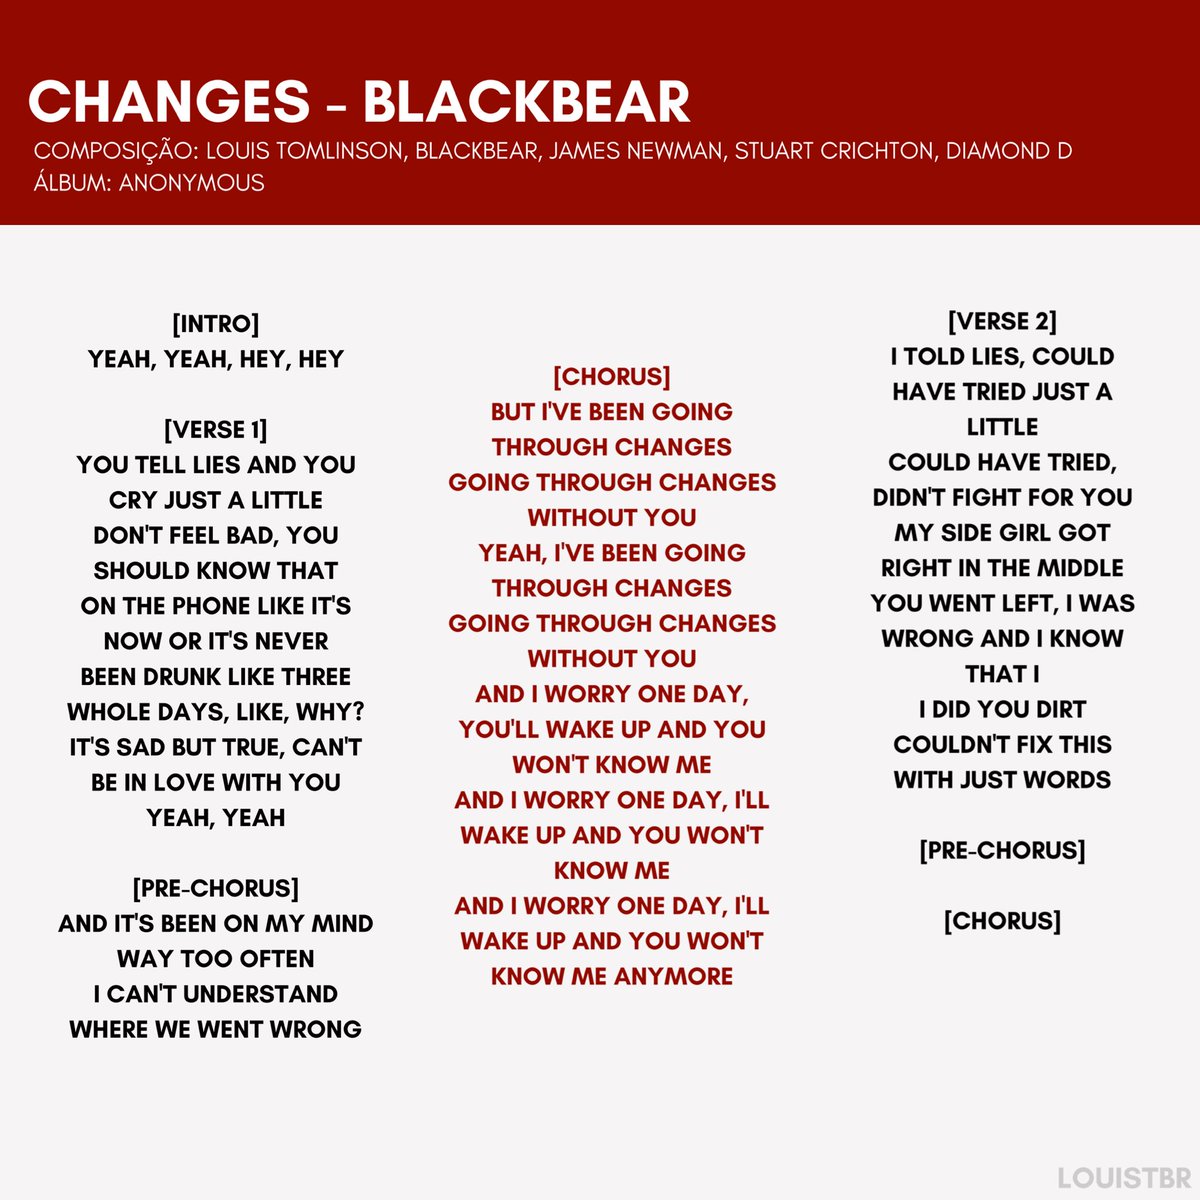 Blackstreet – Never Gonna Let You Go Inglês Letras & Português Traducao -  lyrics